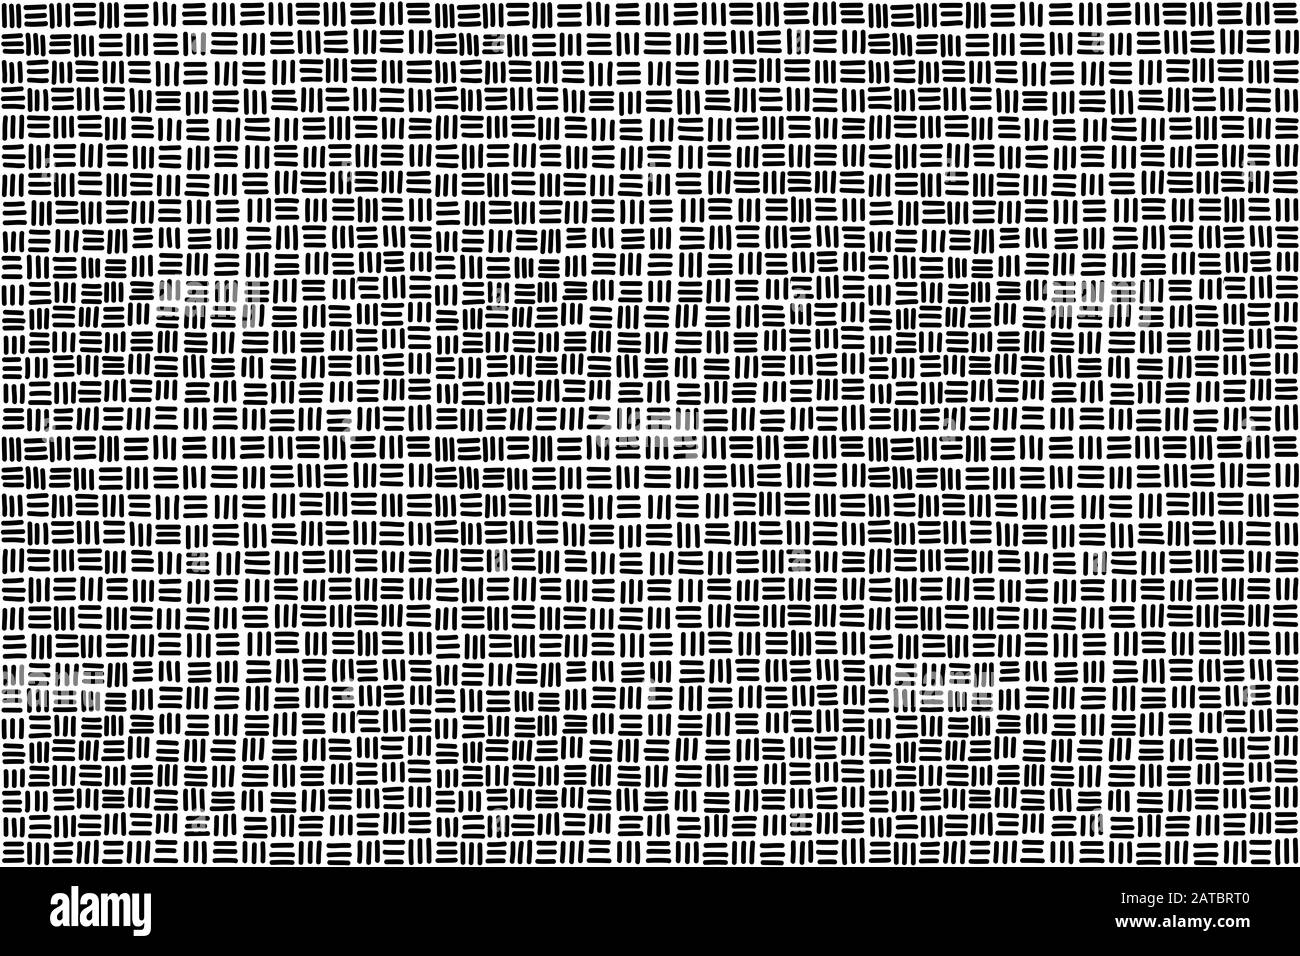 Sfondo senza cuciture in bianco e nero. Trefoli orizzontali e verticali disegnati a mano, con un motivo quadrato. Foto Stock